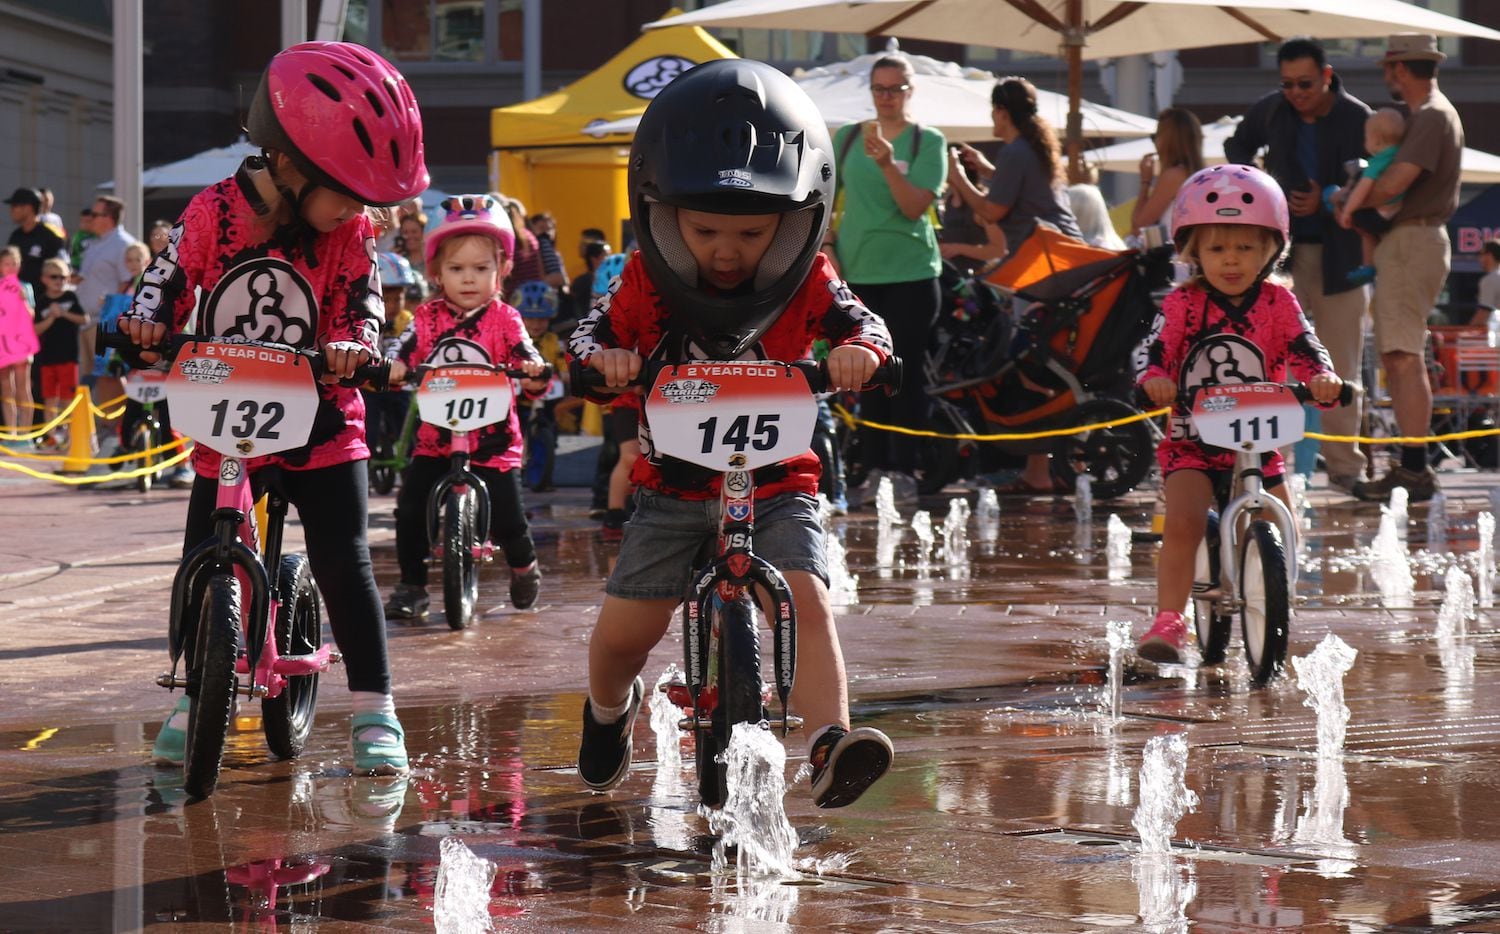 Walter Cunningham Perú En cantidad Niños de 2 años compiten en divertida carrera de bicicletas en Fort Worth